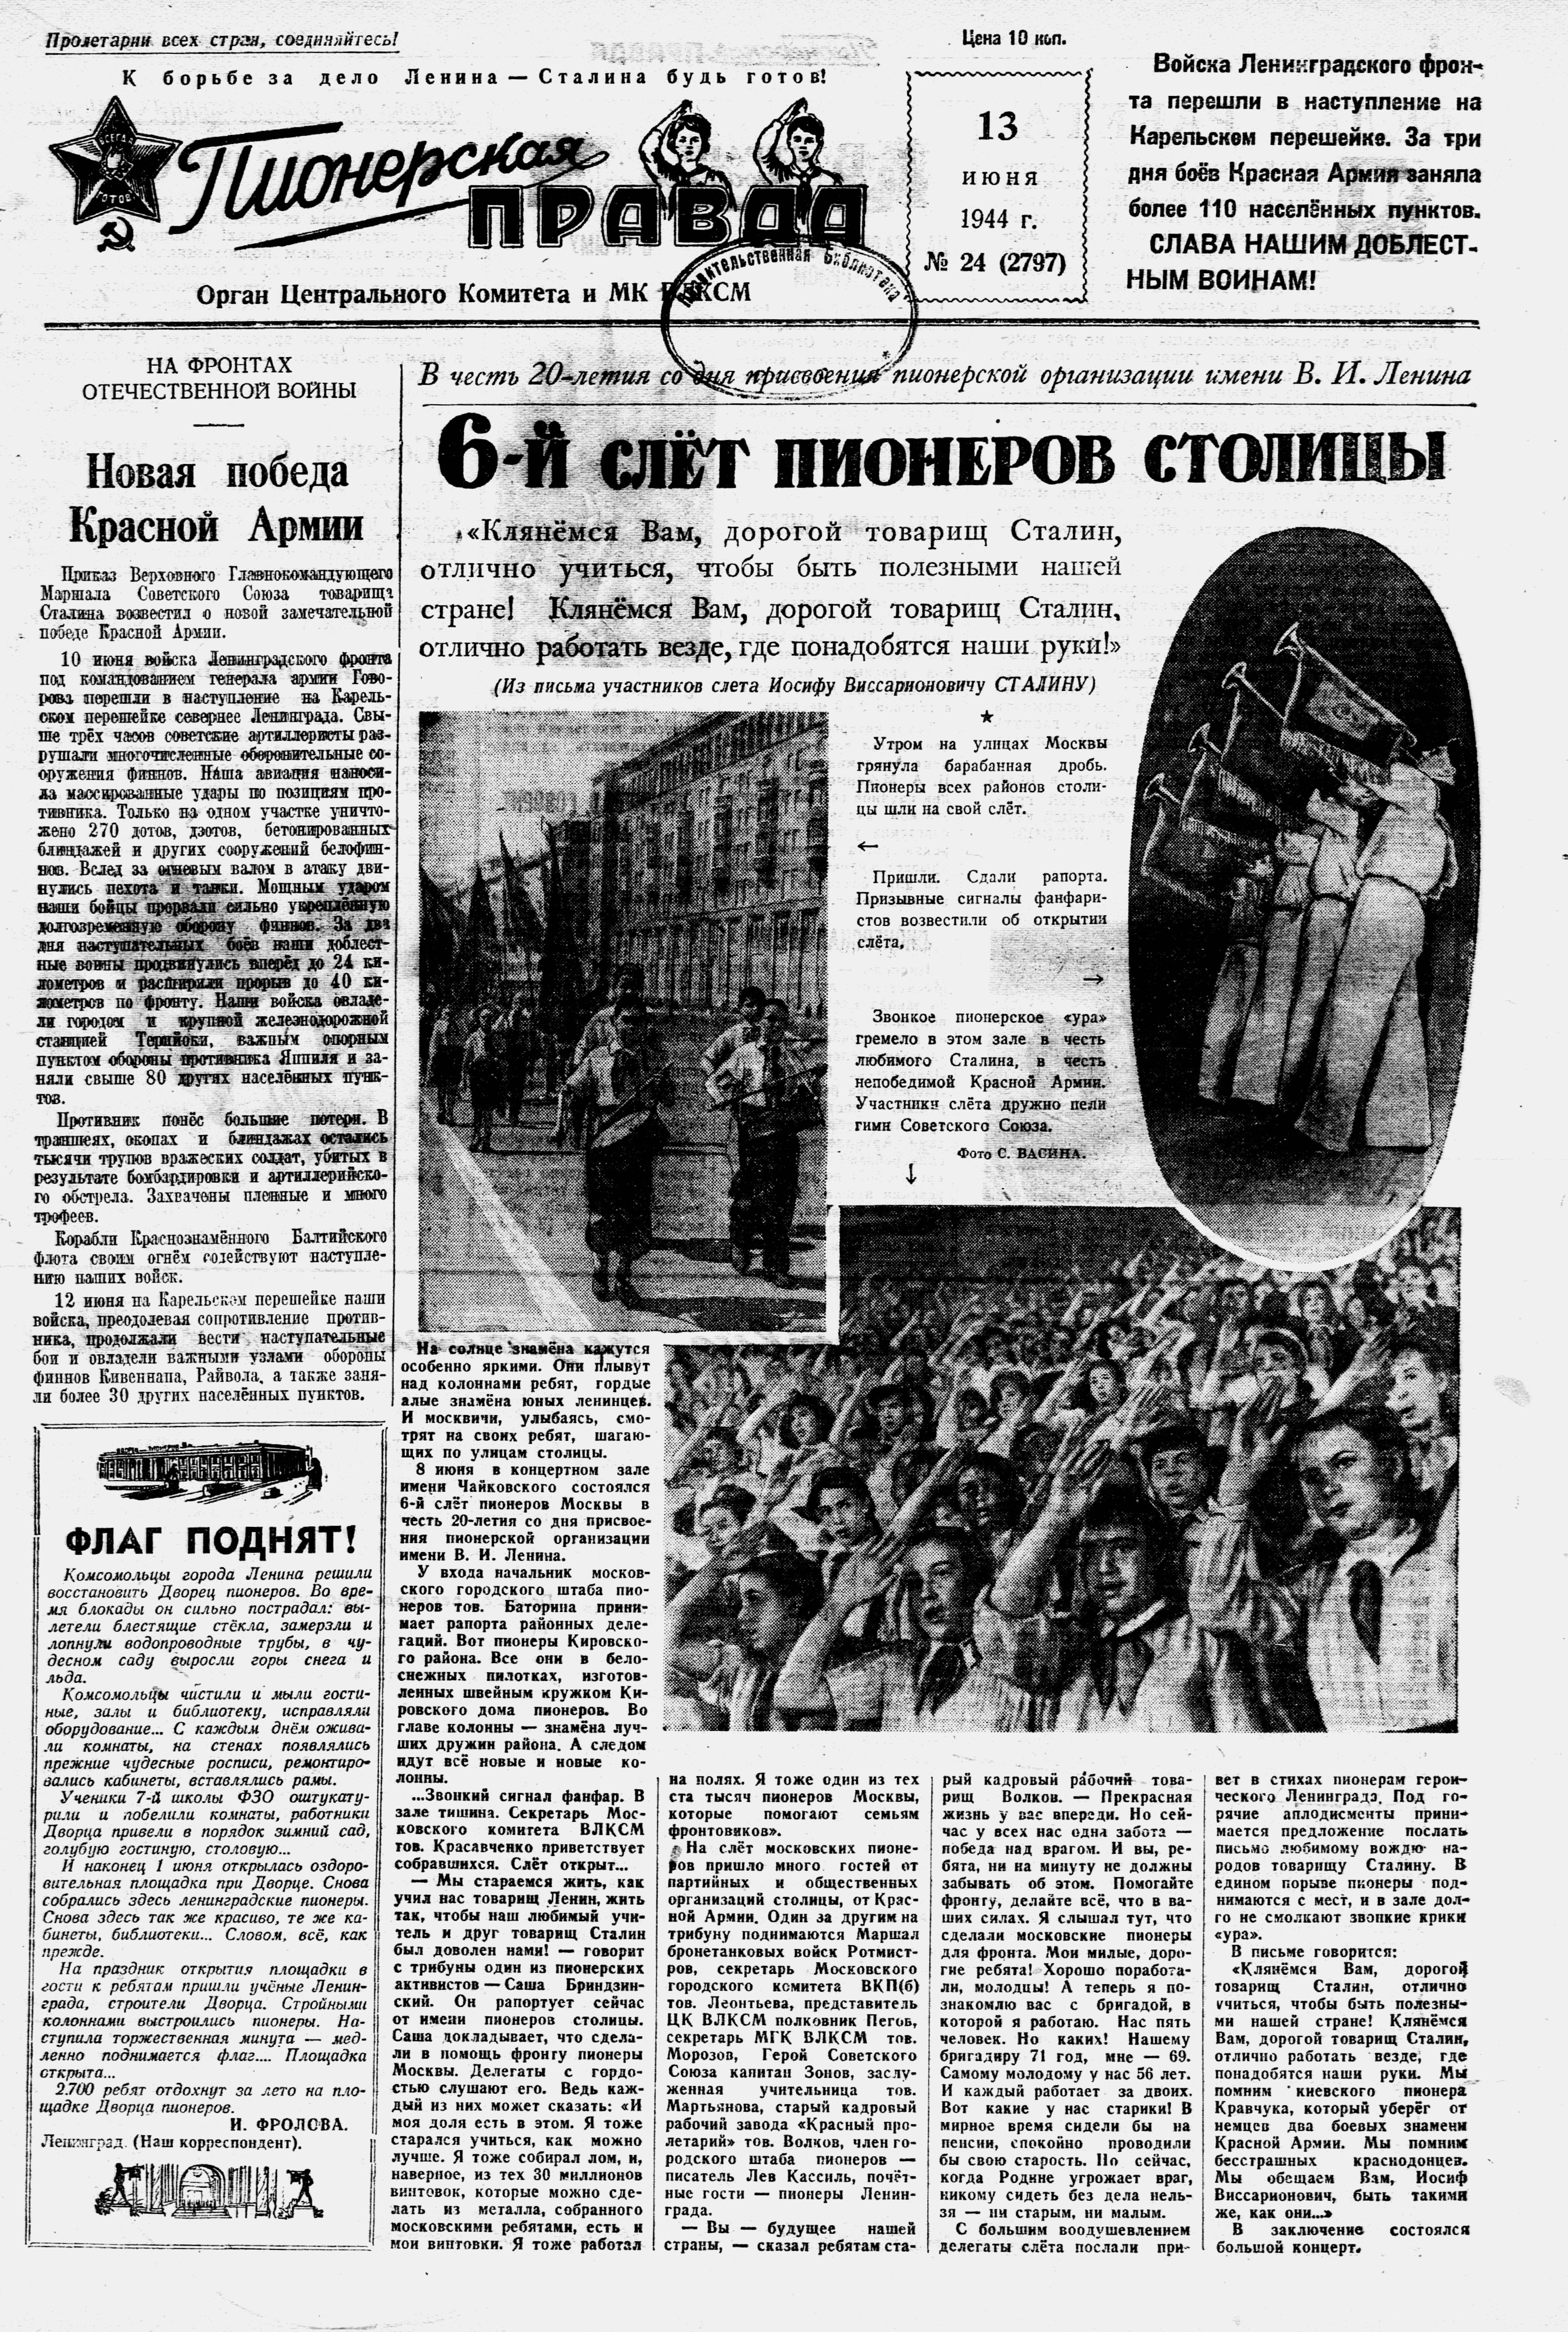 Пионерская правда. 1944. № 024 (2797): Орган ЦК и МК ВЛКСМ - 1944